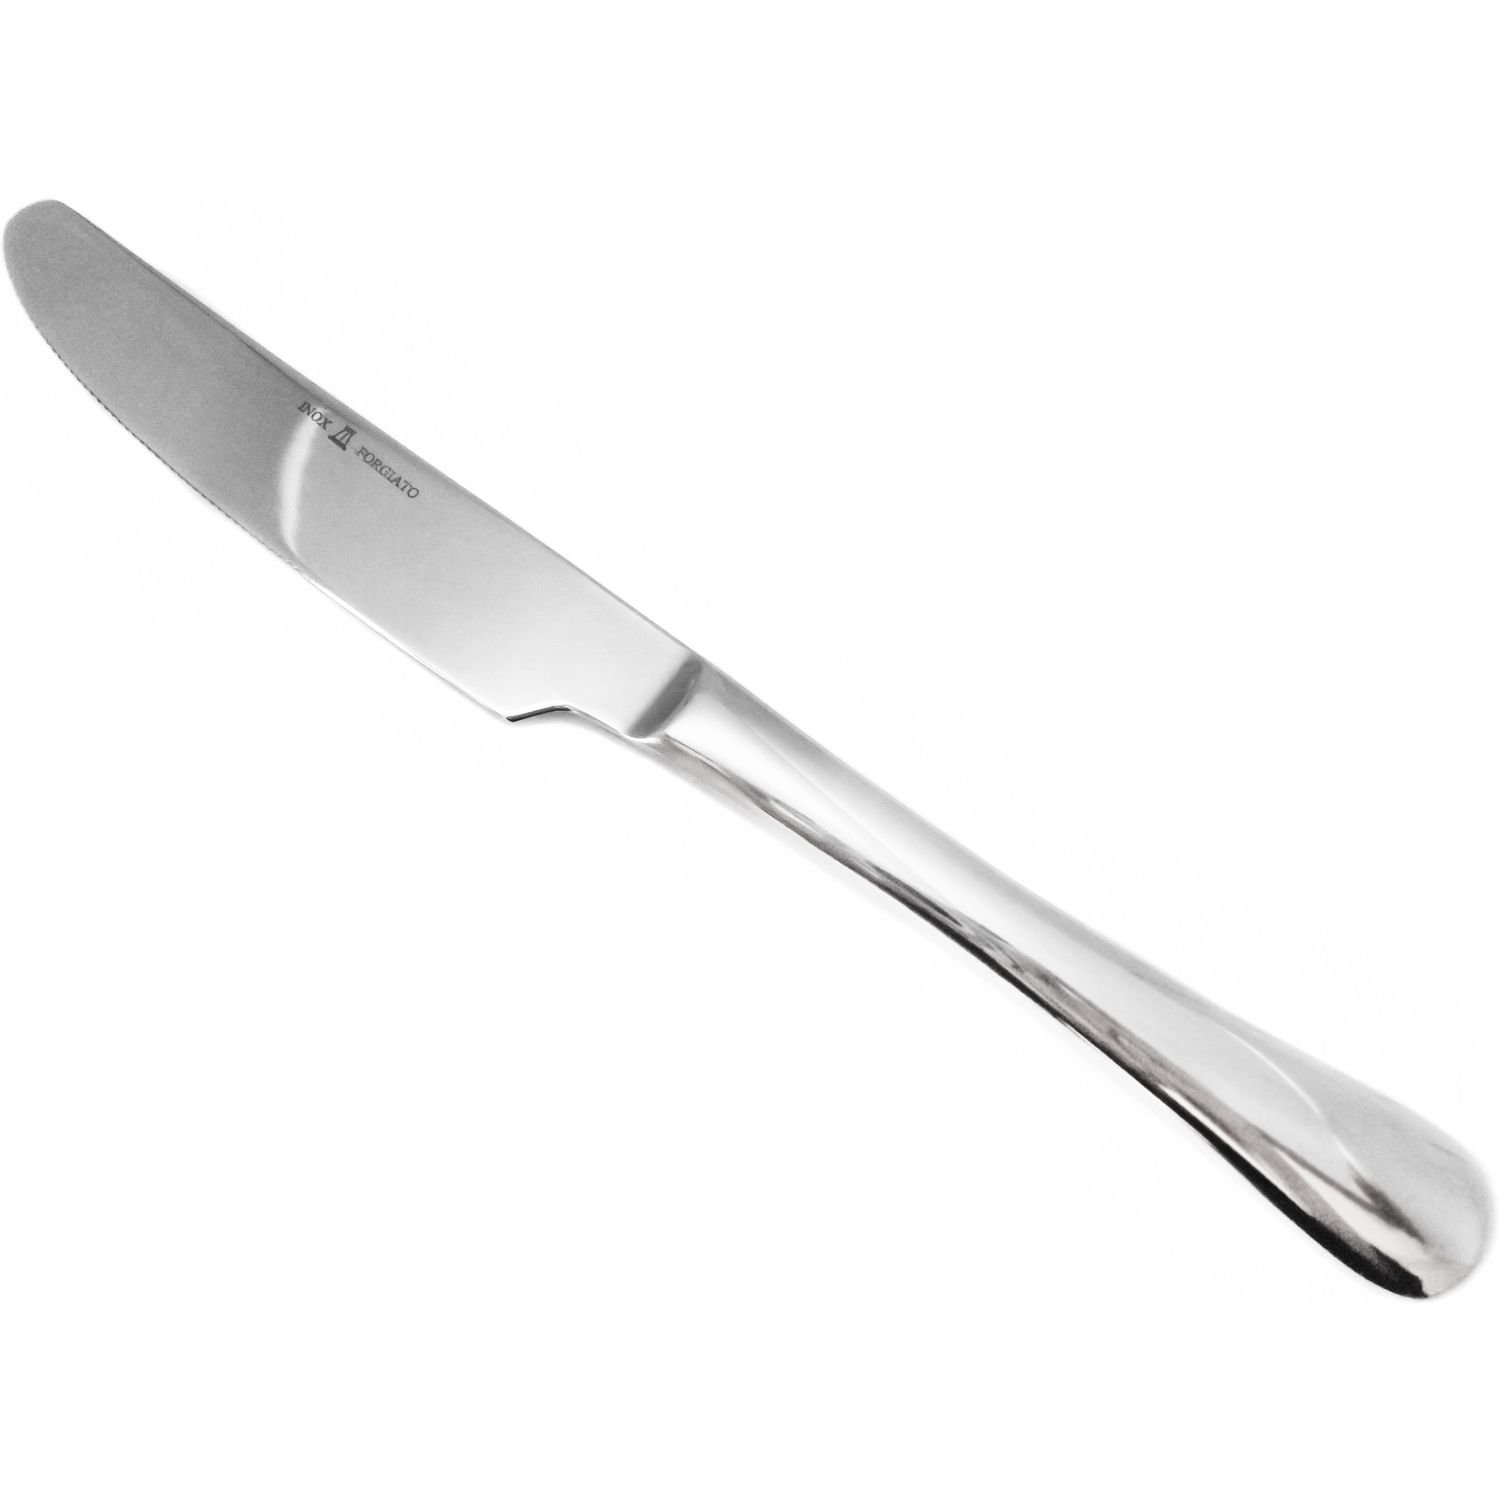 Нож столовый Mazhura Beech wood, 18/10, 23 см (mz643) - фото 1